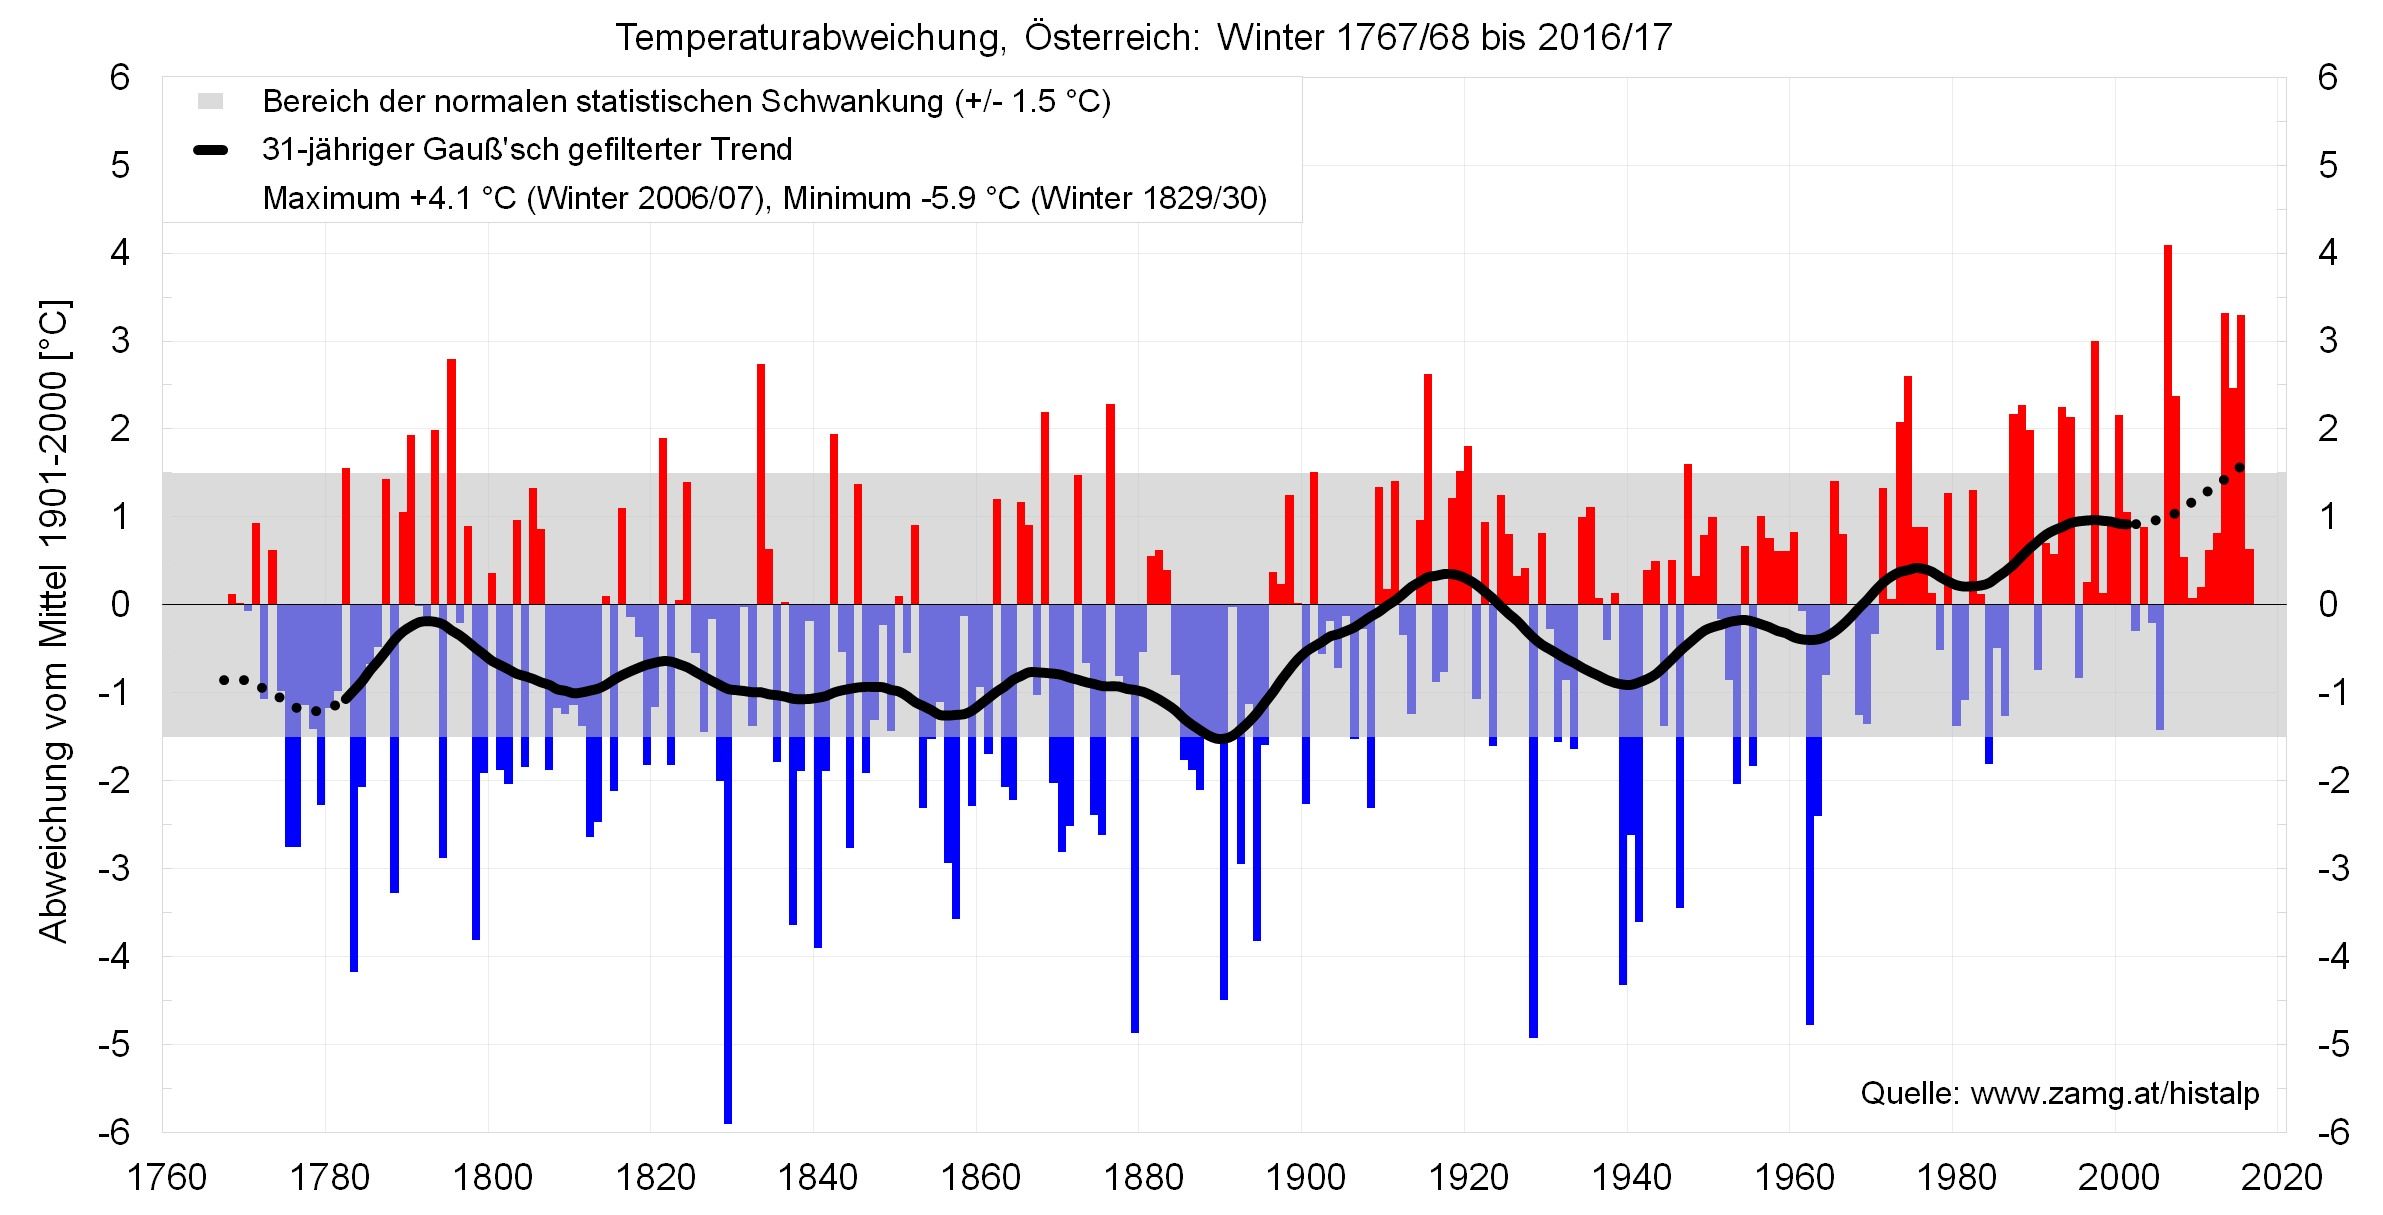 Temperatuurafwijking van bergstations t.o.v. het gemiddelde 1901-2000